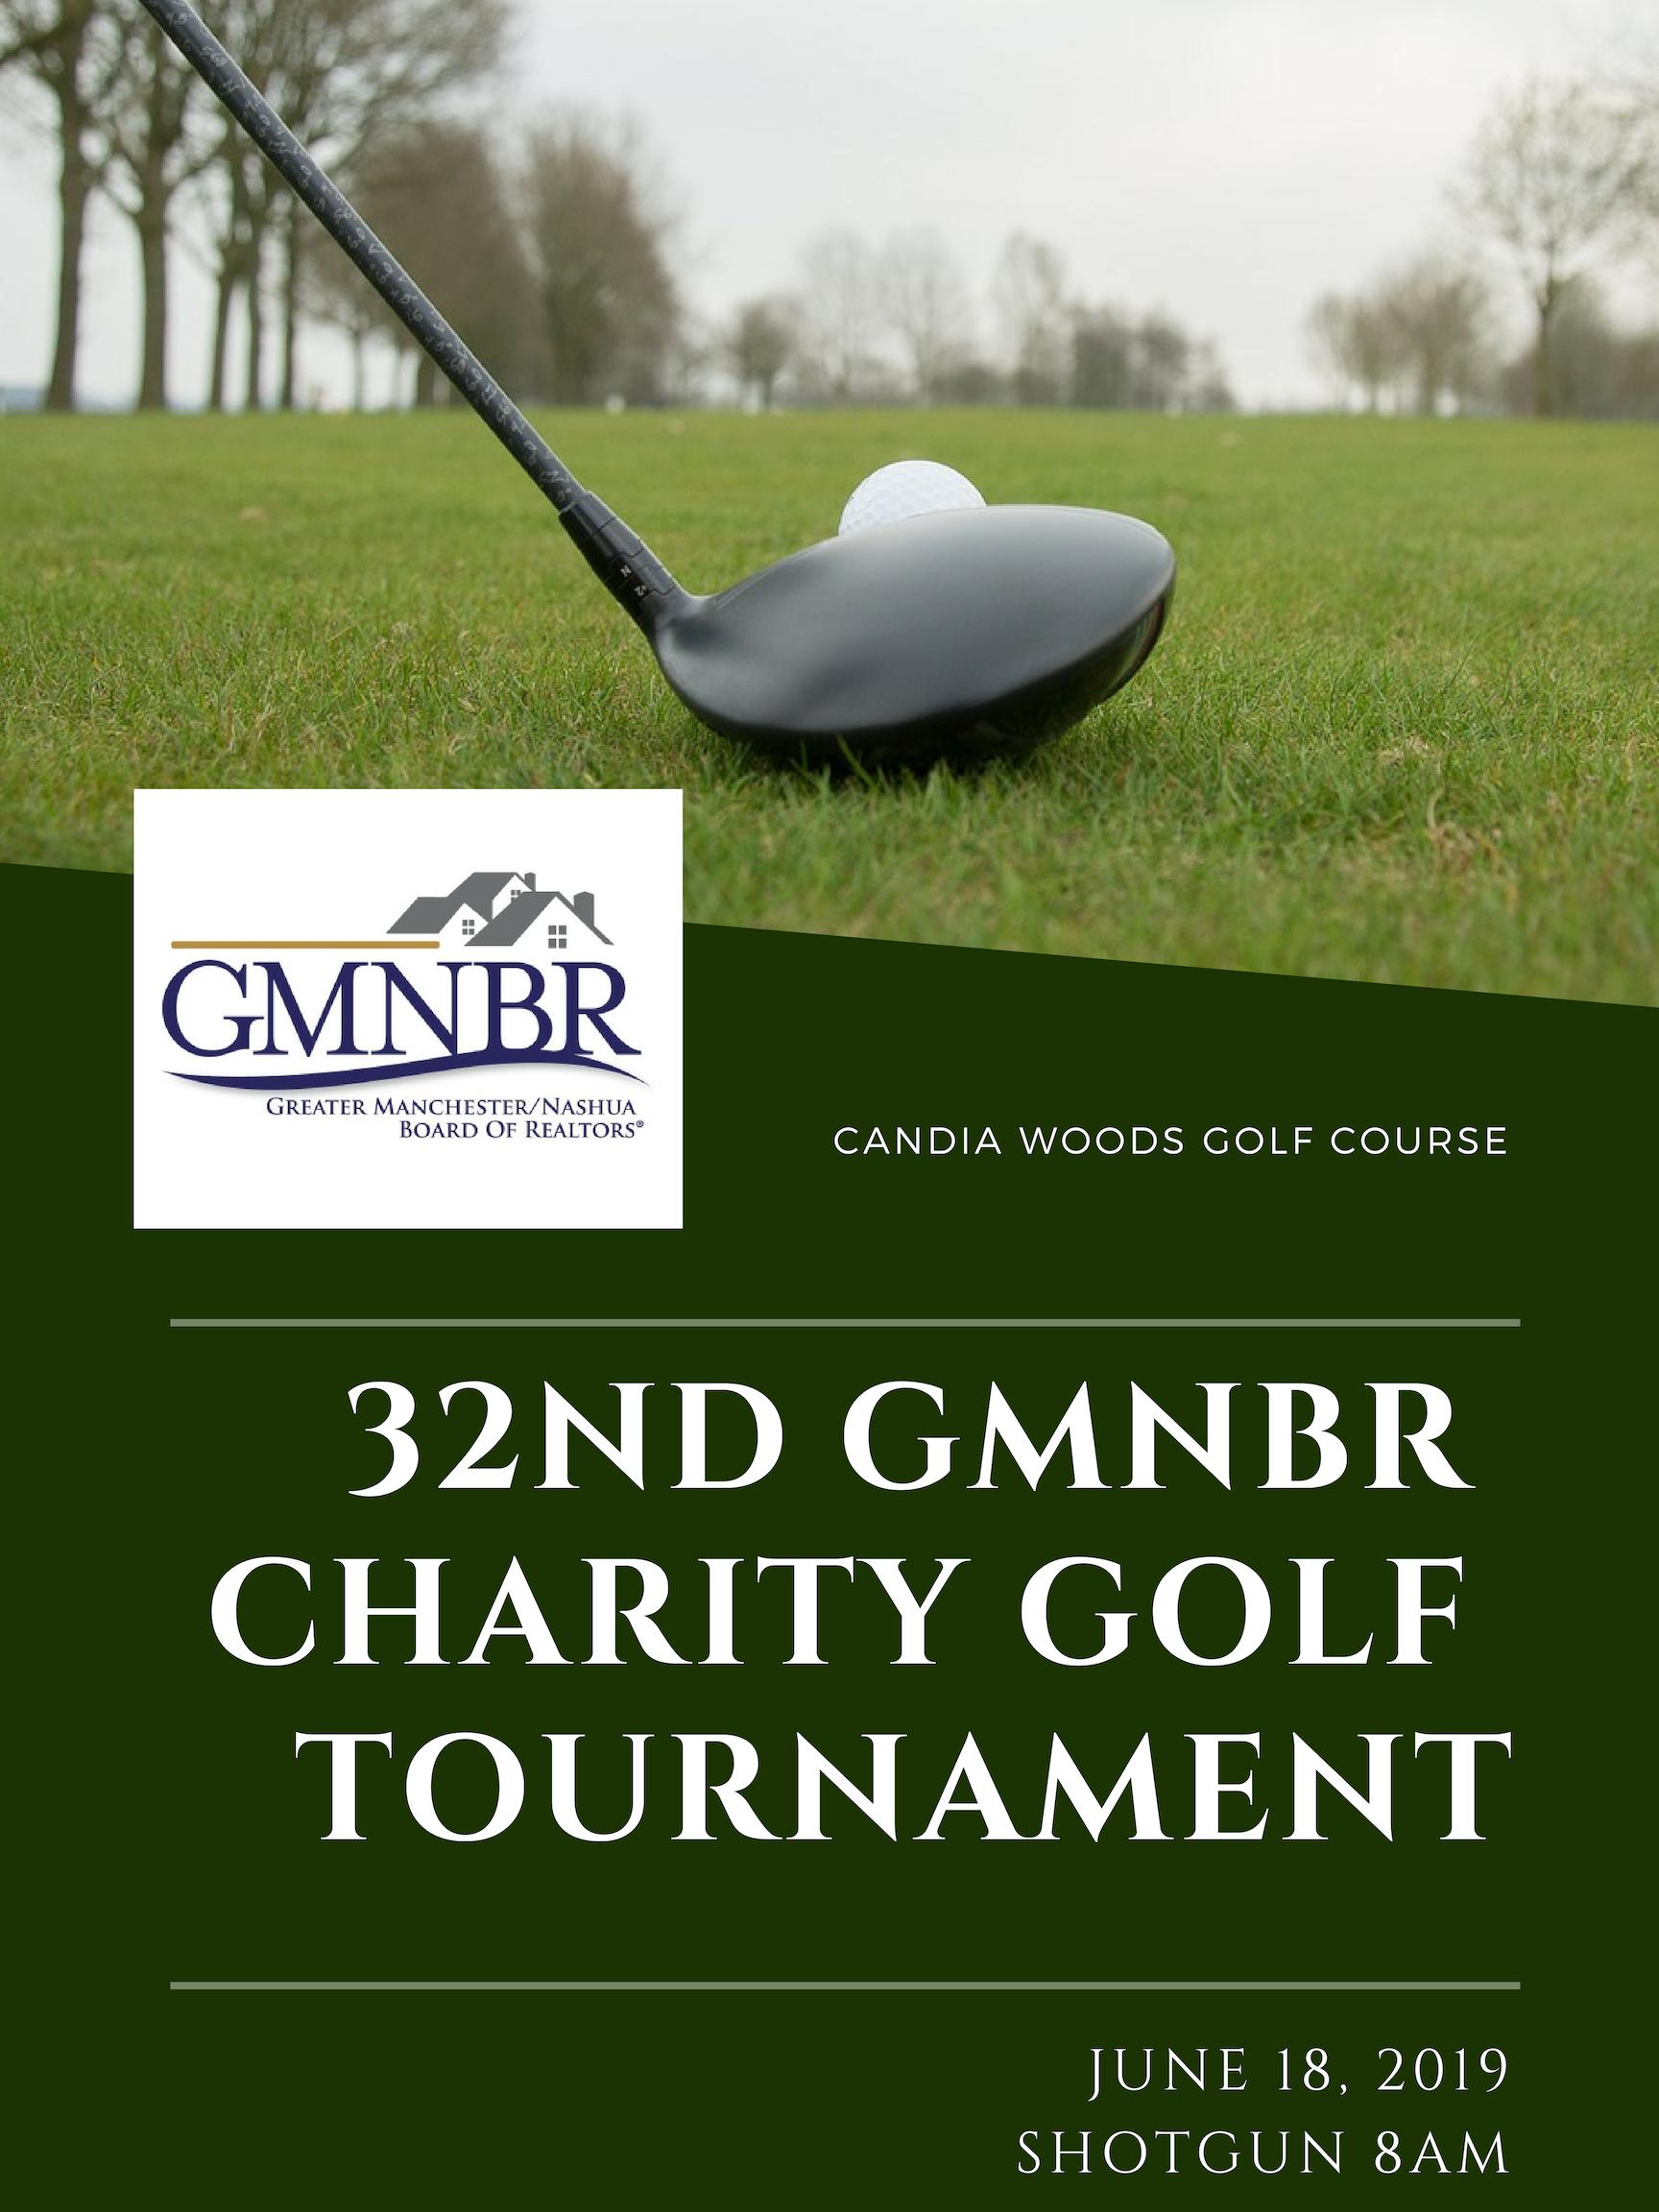 GMNBR Charity Golf Tournament